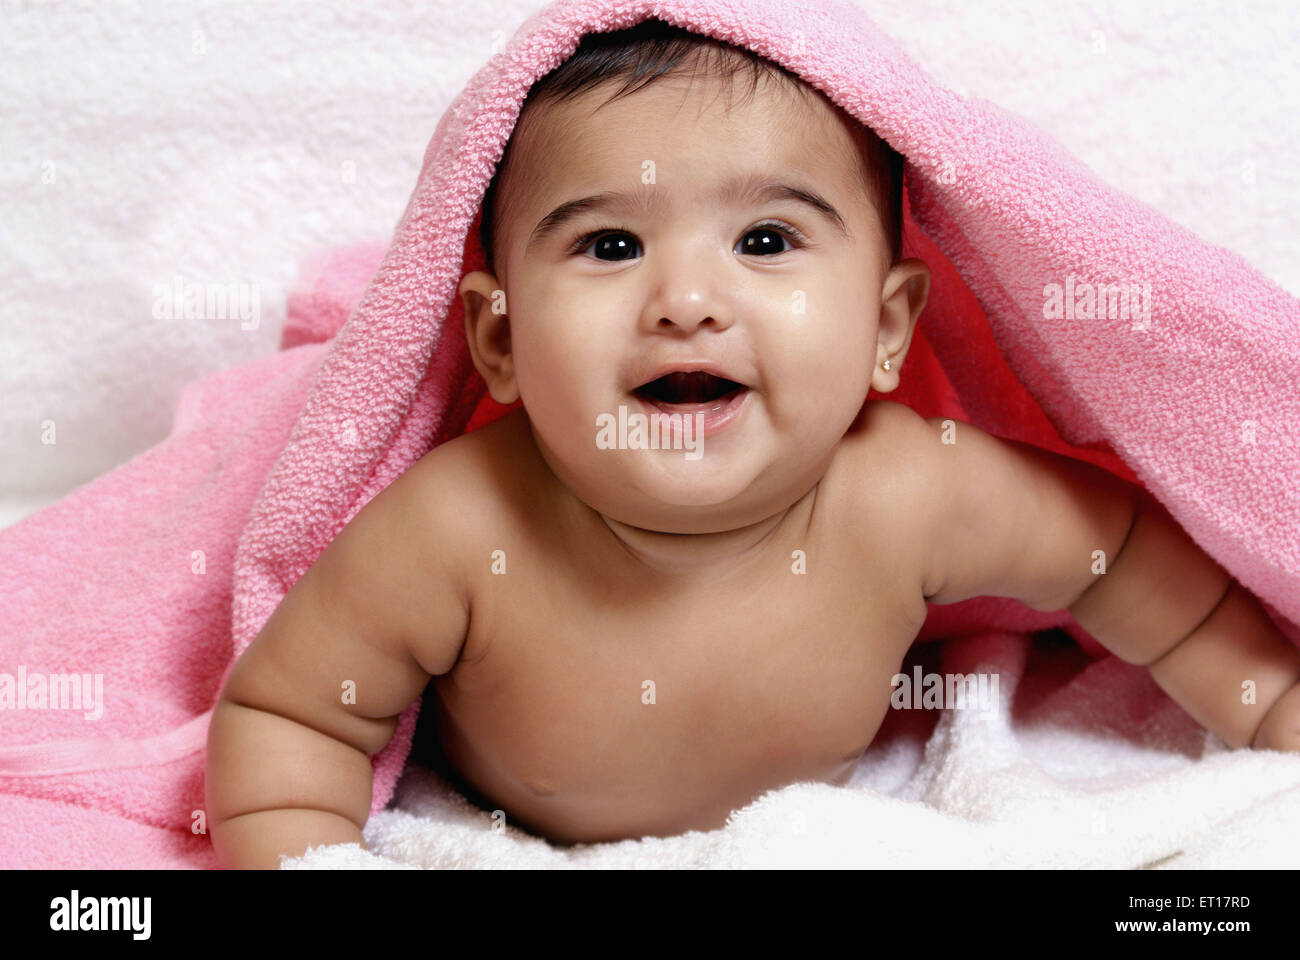 Baby Boy Abdeckung Kopf mit einem rosa Handtuch Indien Asien Herr #364 Stockfoto